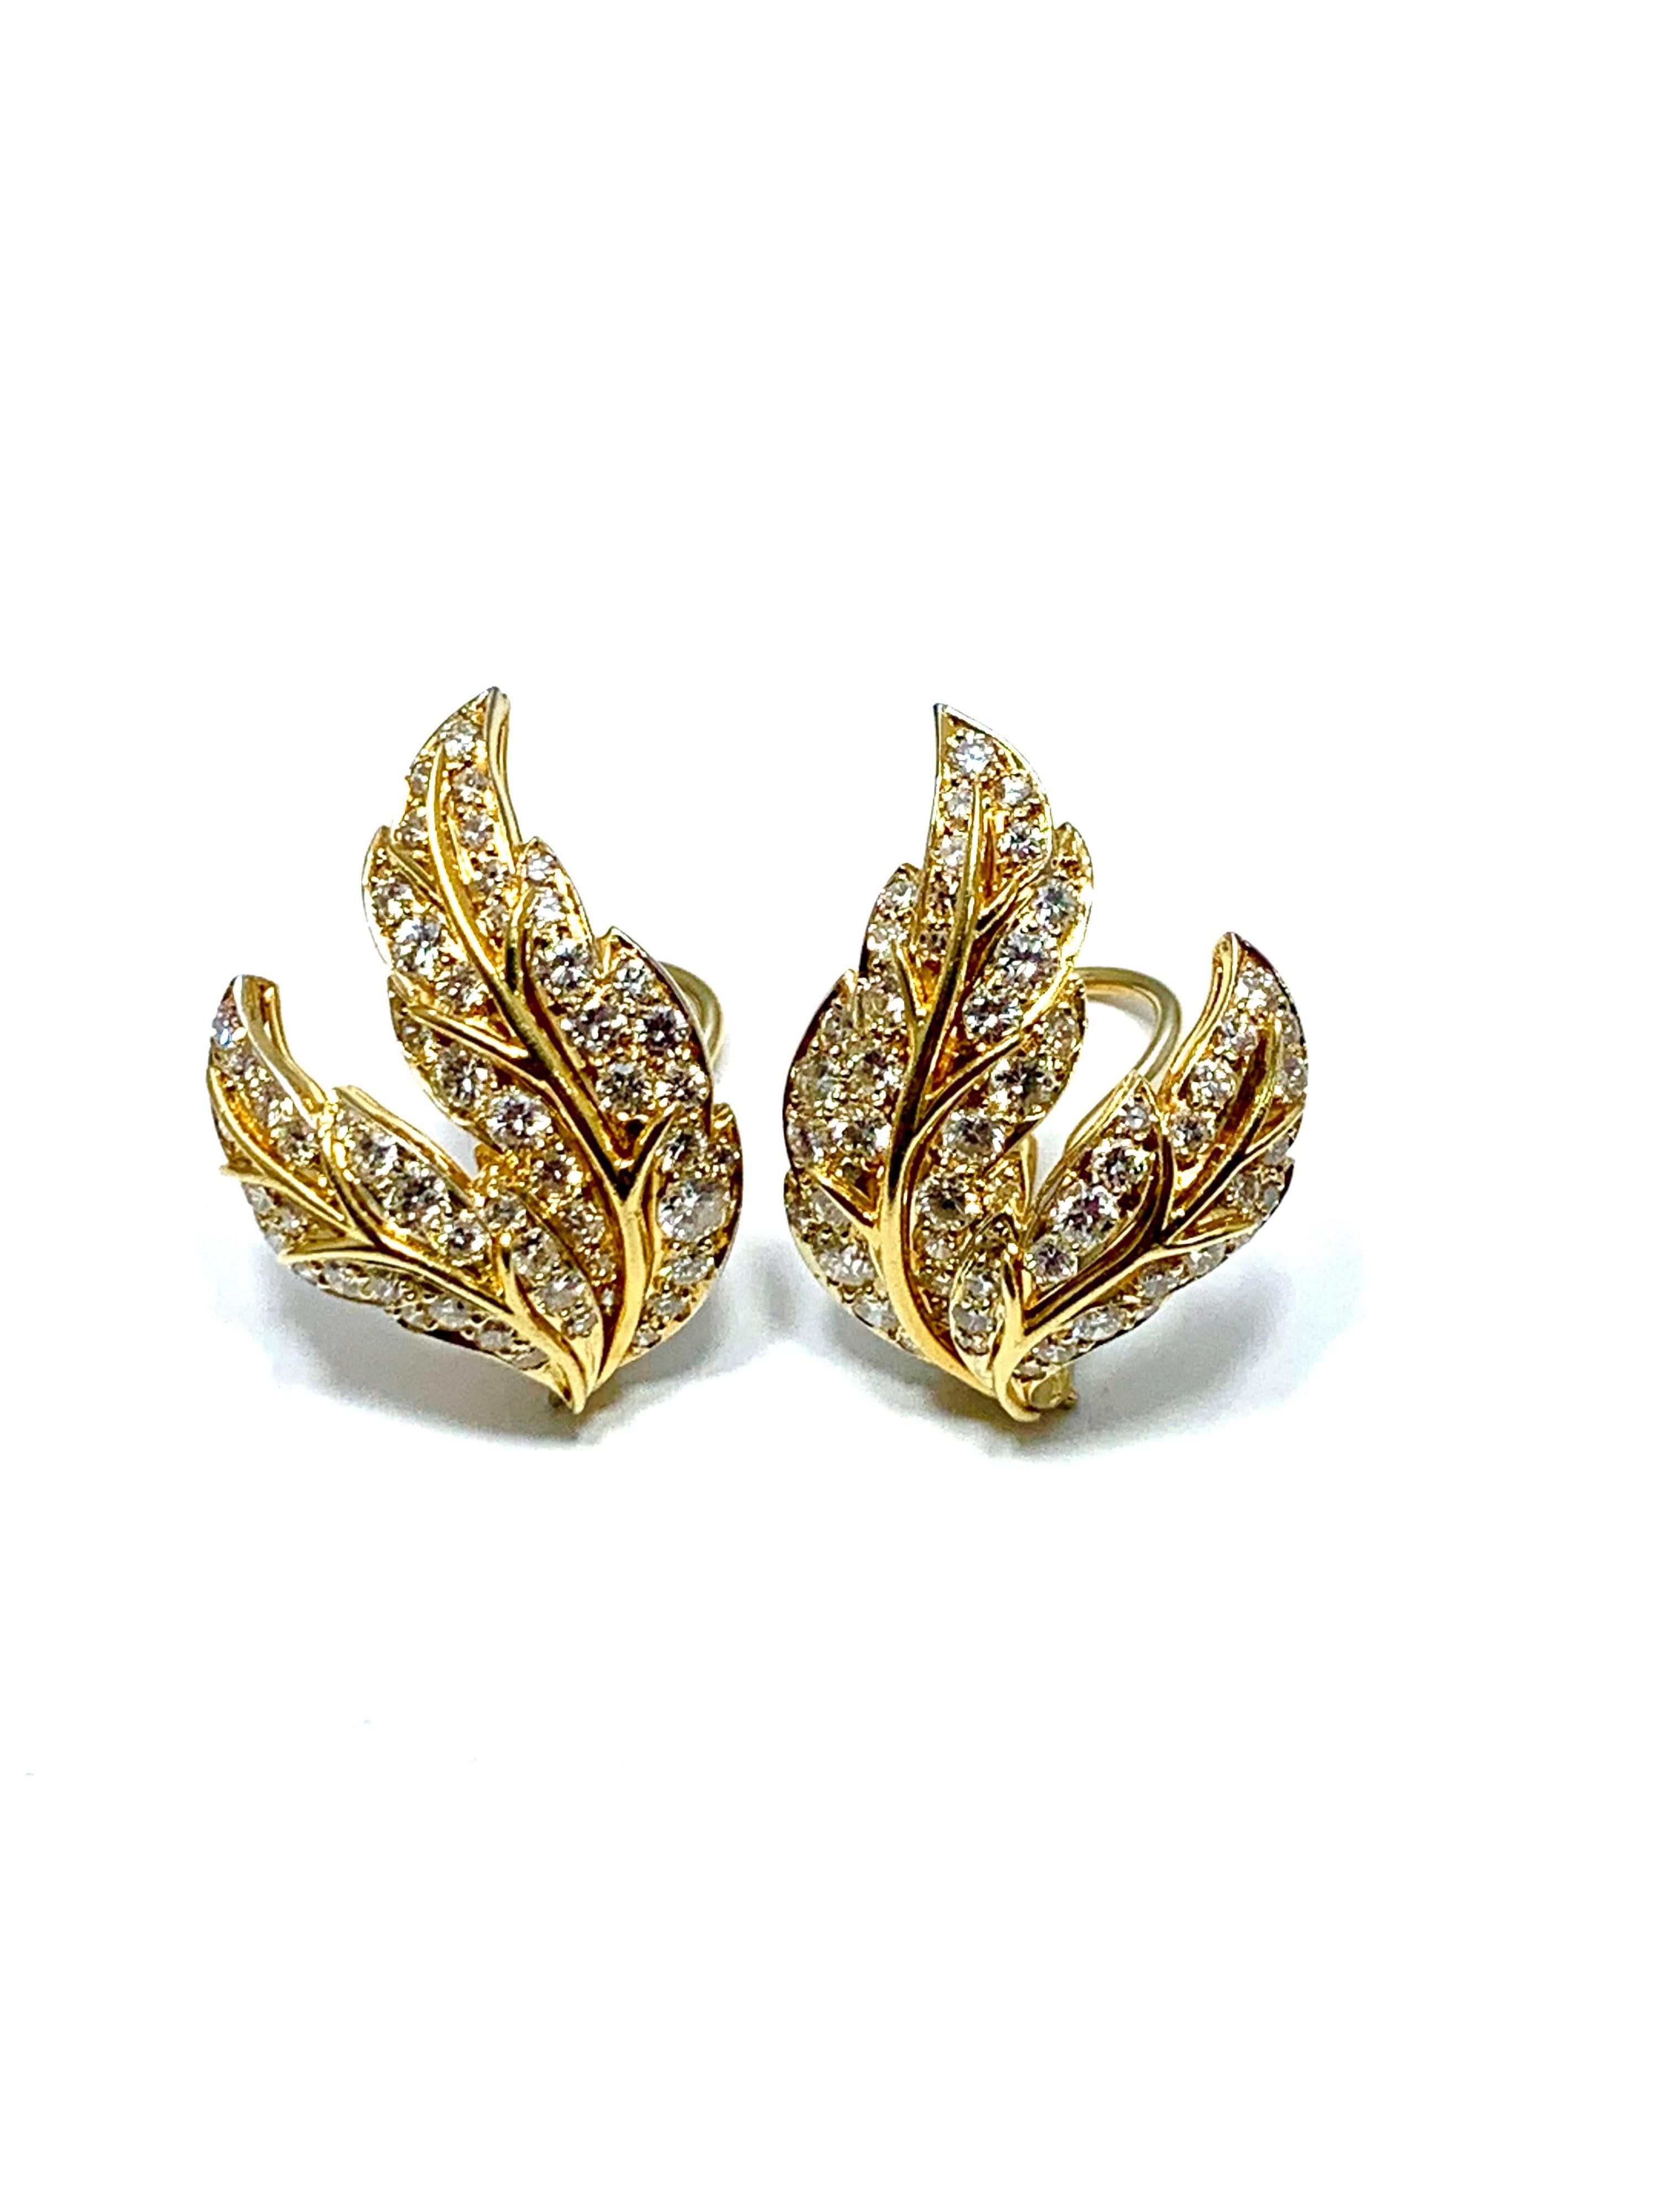 Retro Van Cleef & Arpels 4.28 Carat Round Brilliant Diamond Leaf Gold Clip Earrings